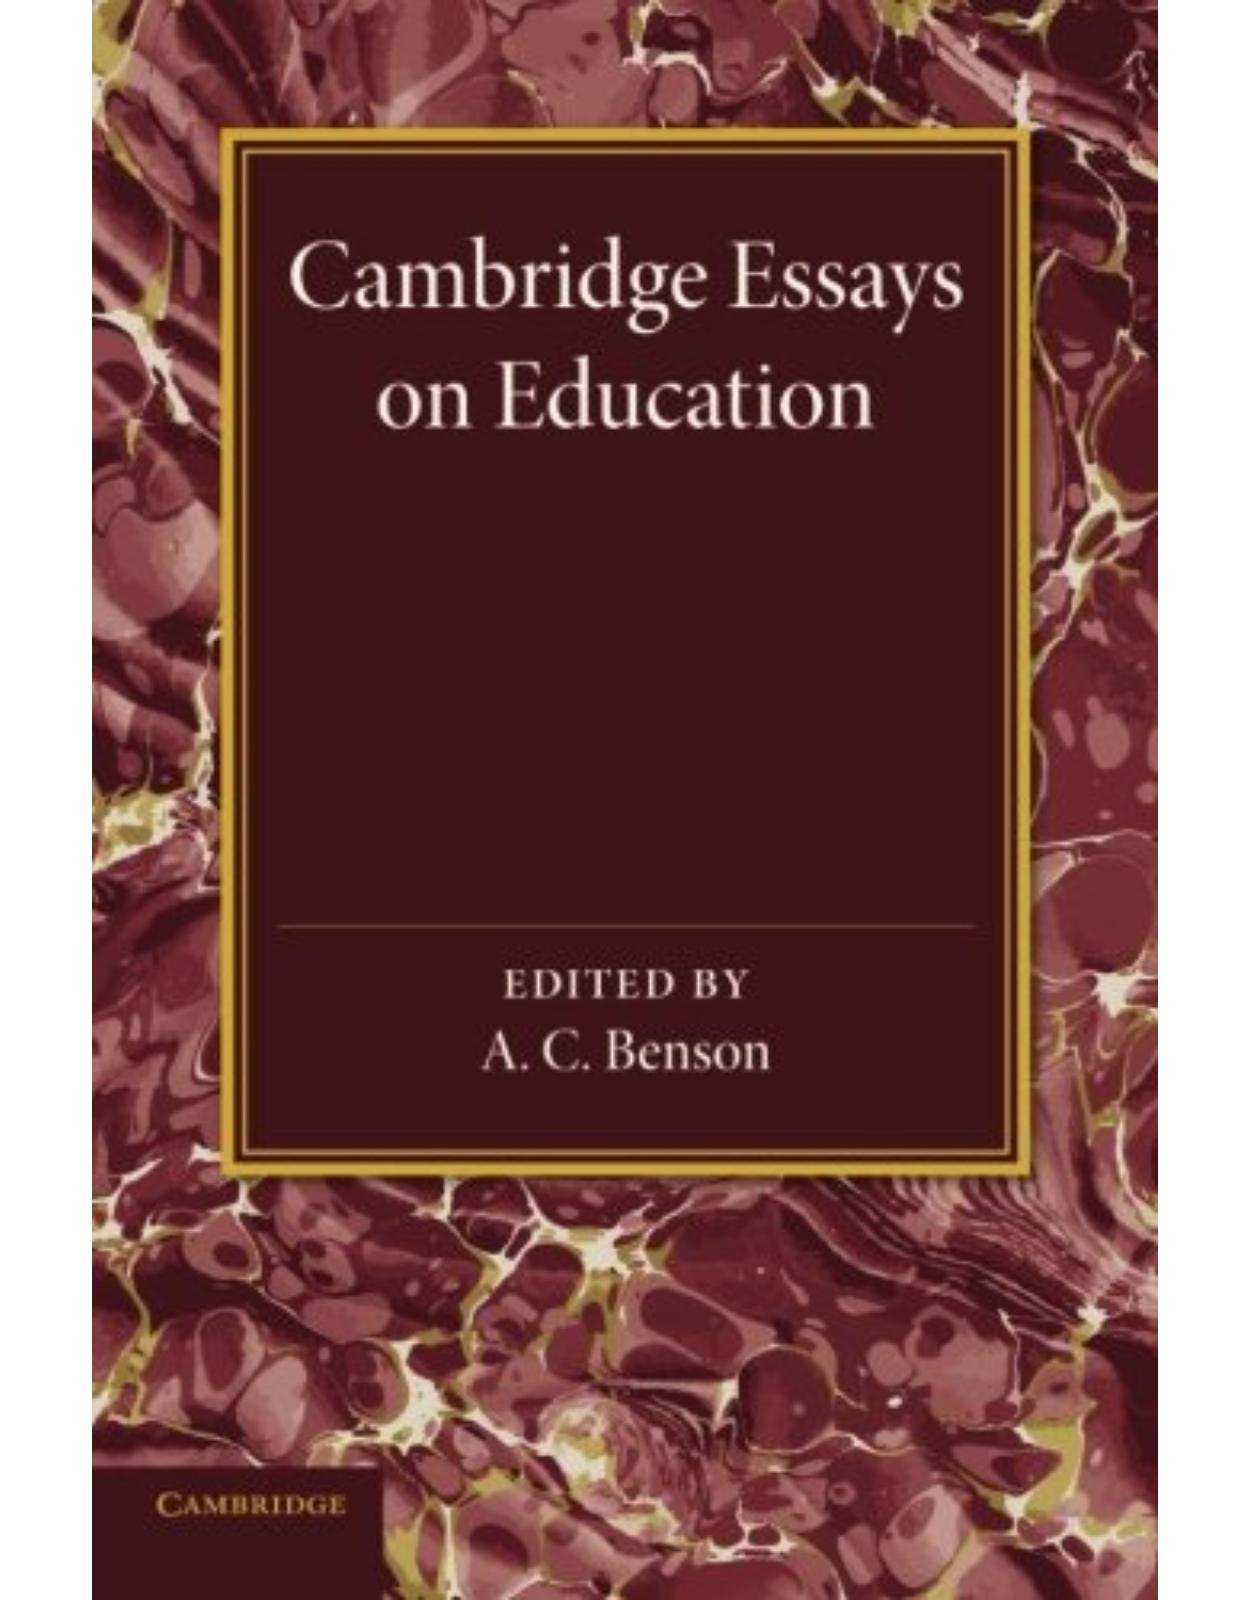 Cambridge Essays in Education